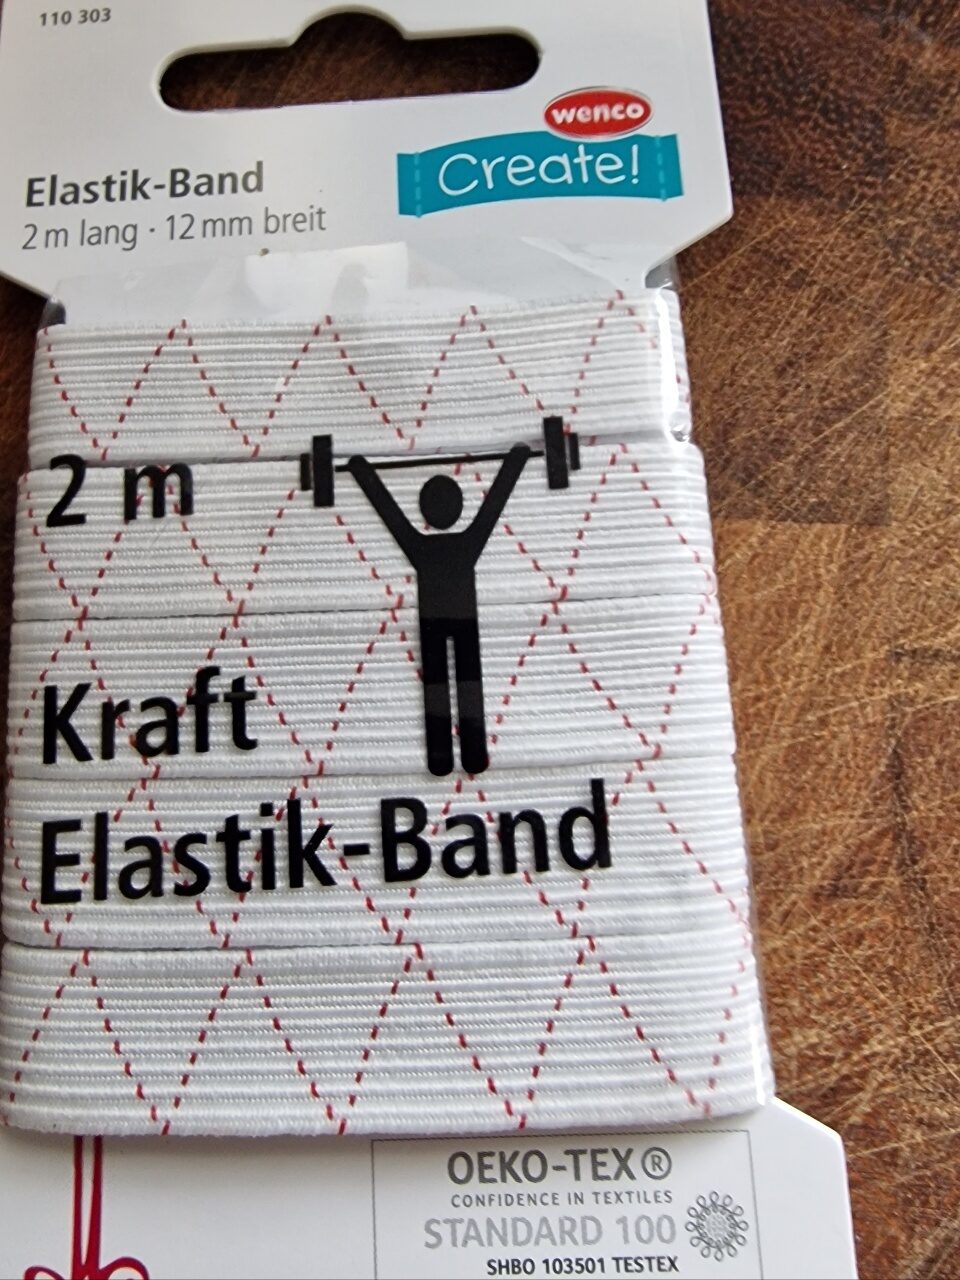 Elasttik Band - Product - de